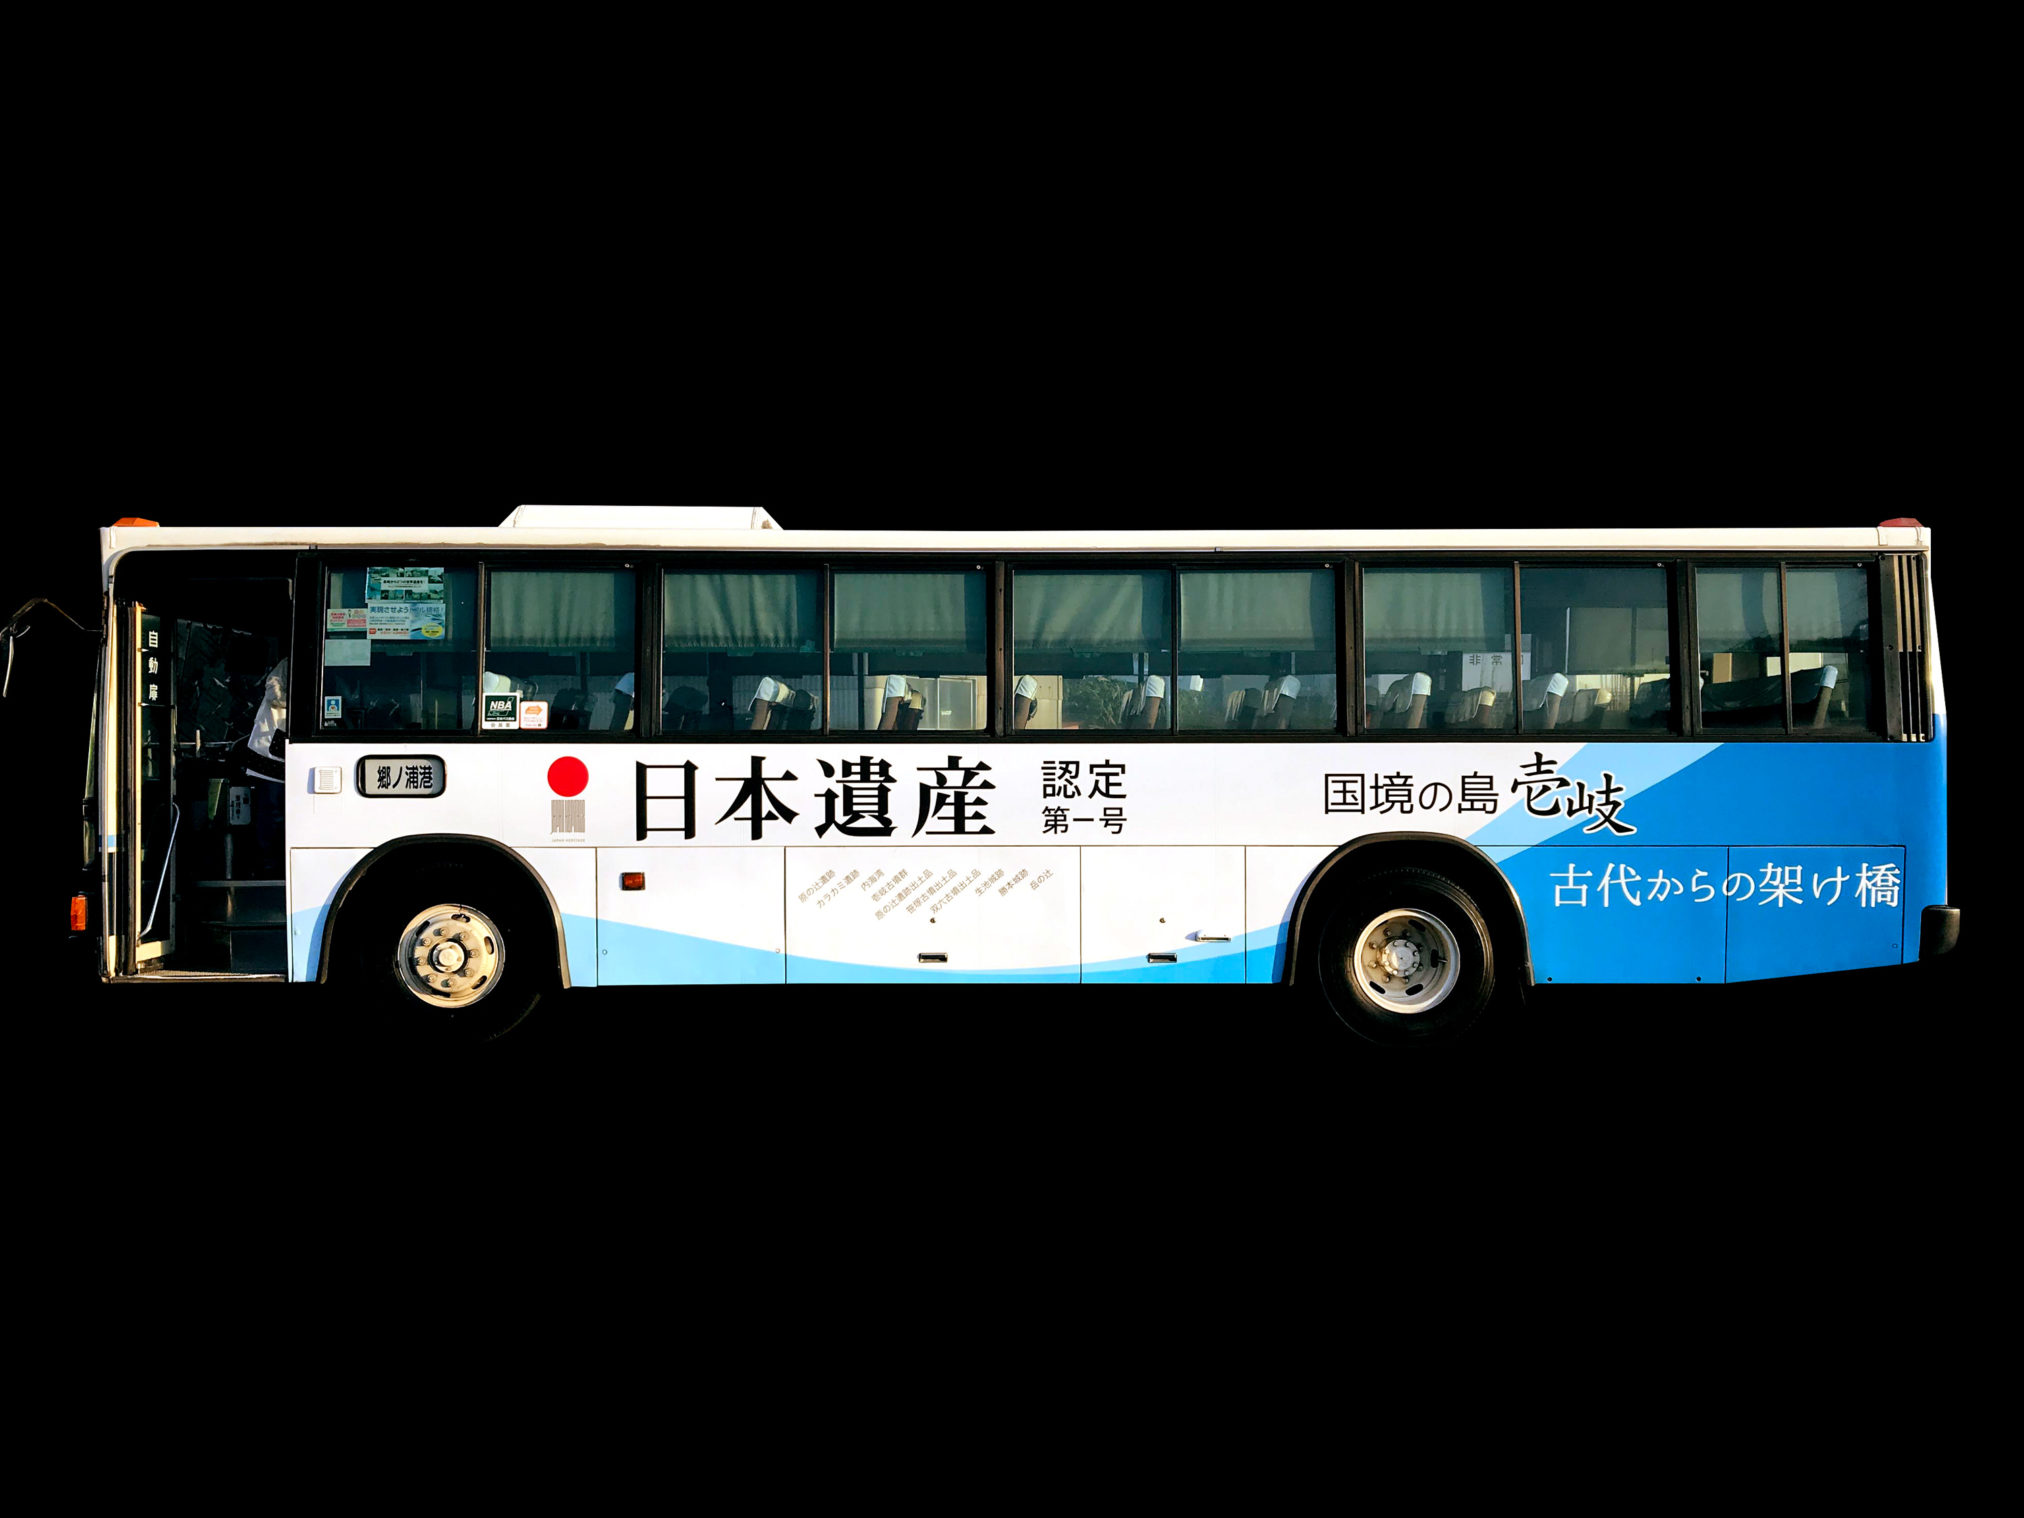 日本遺産ラッピングバスデザイン大沢邦生